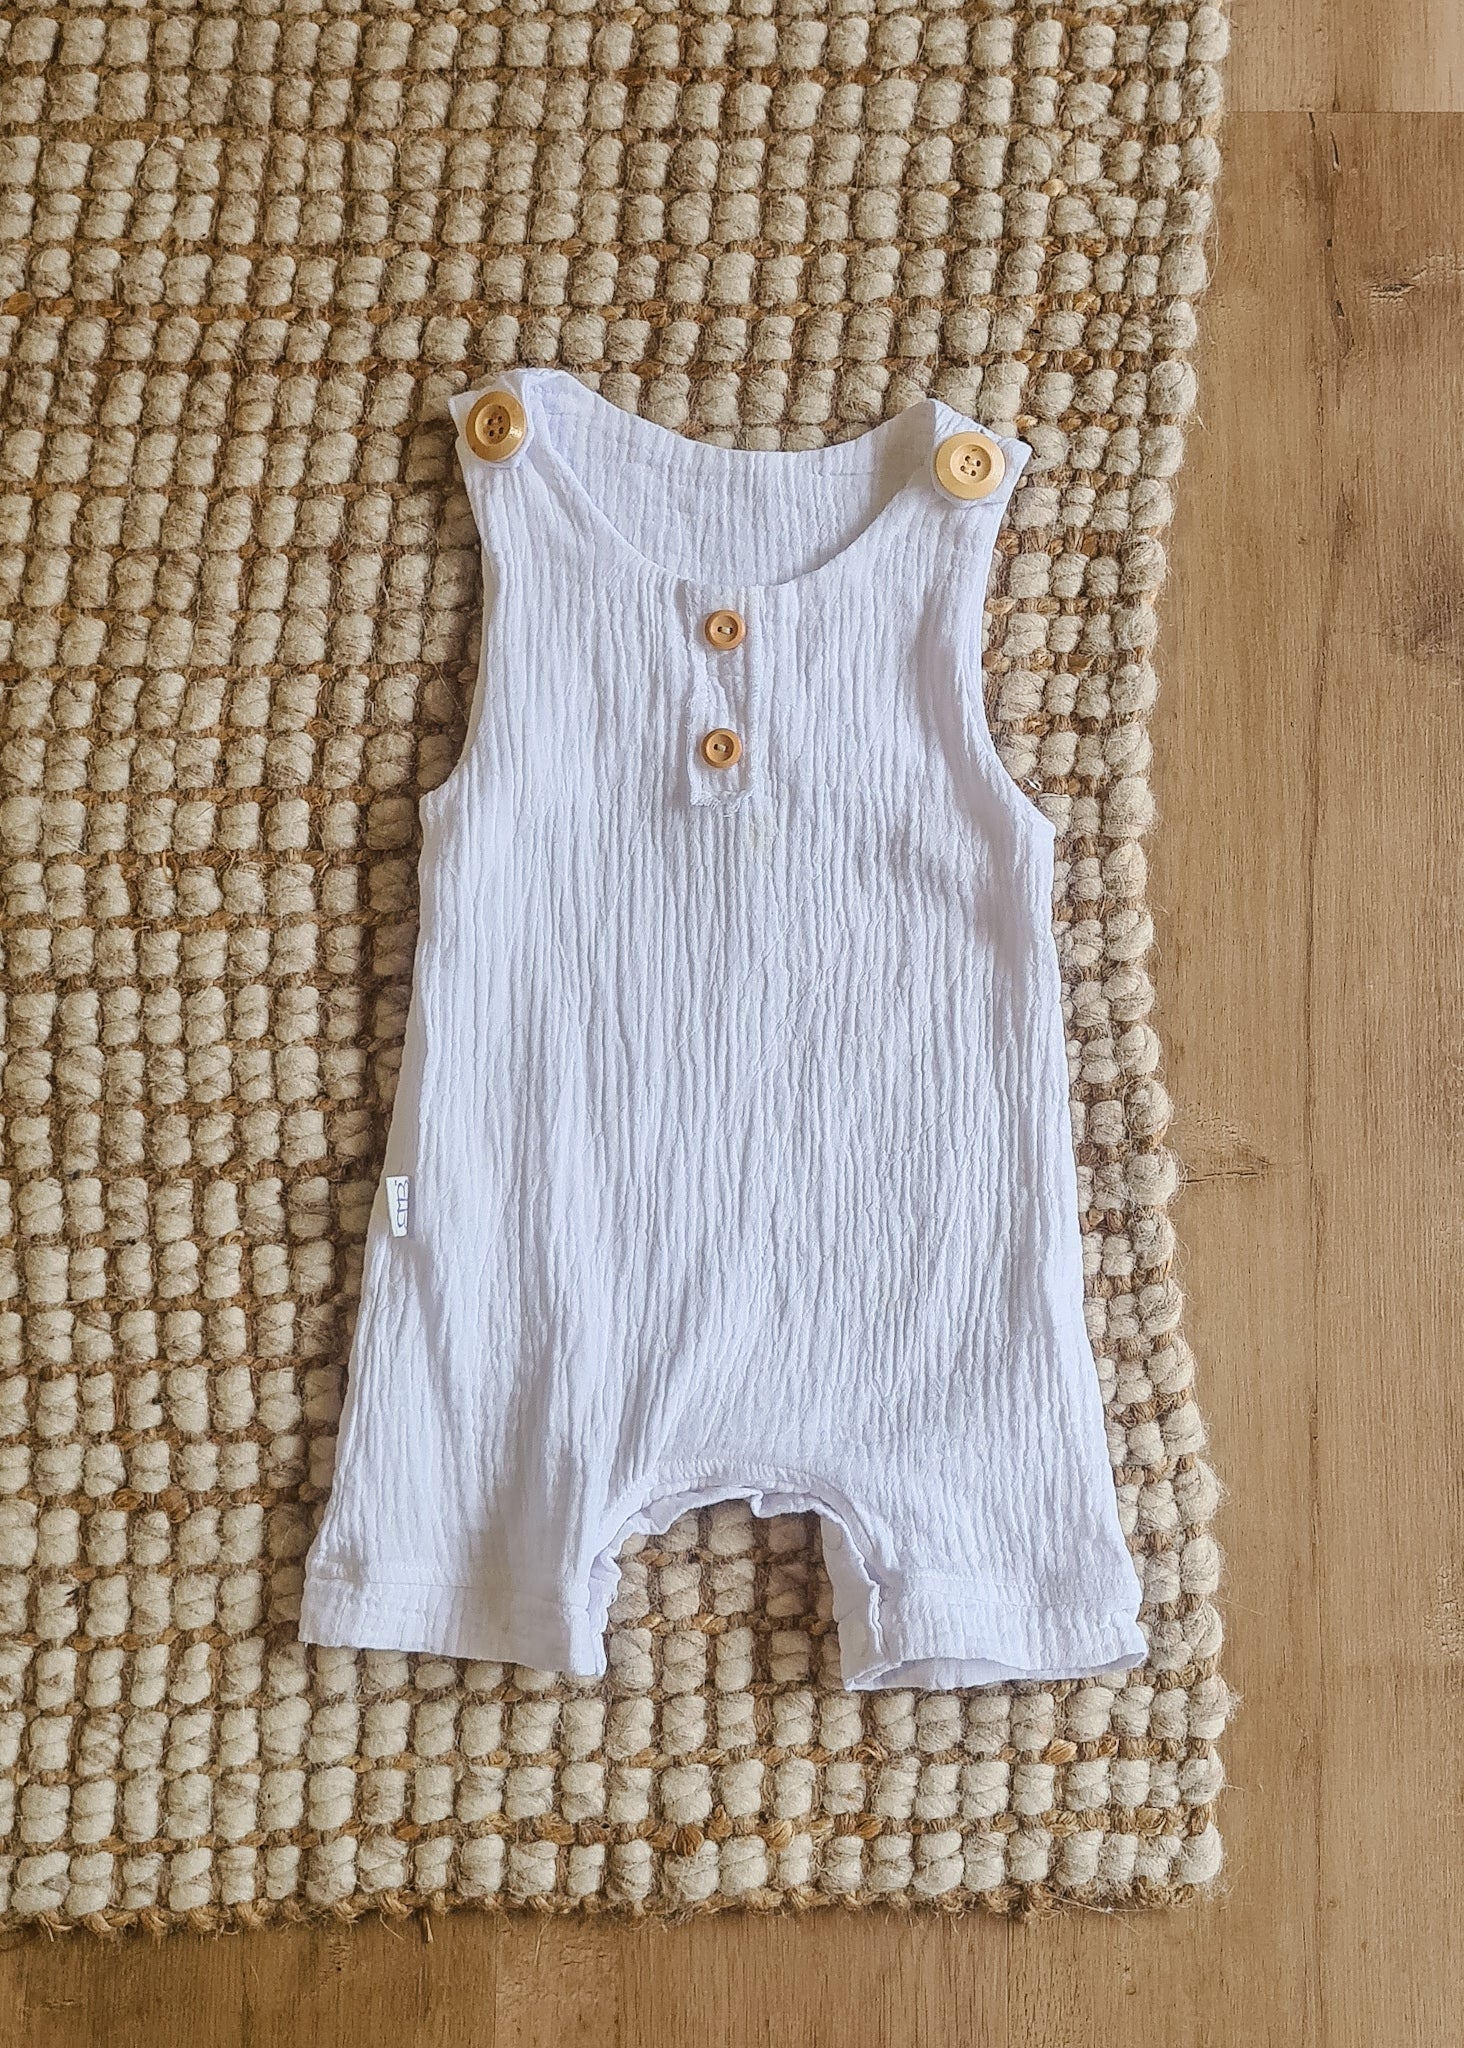 Organic cotton baby romper white overalls